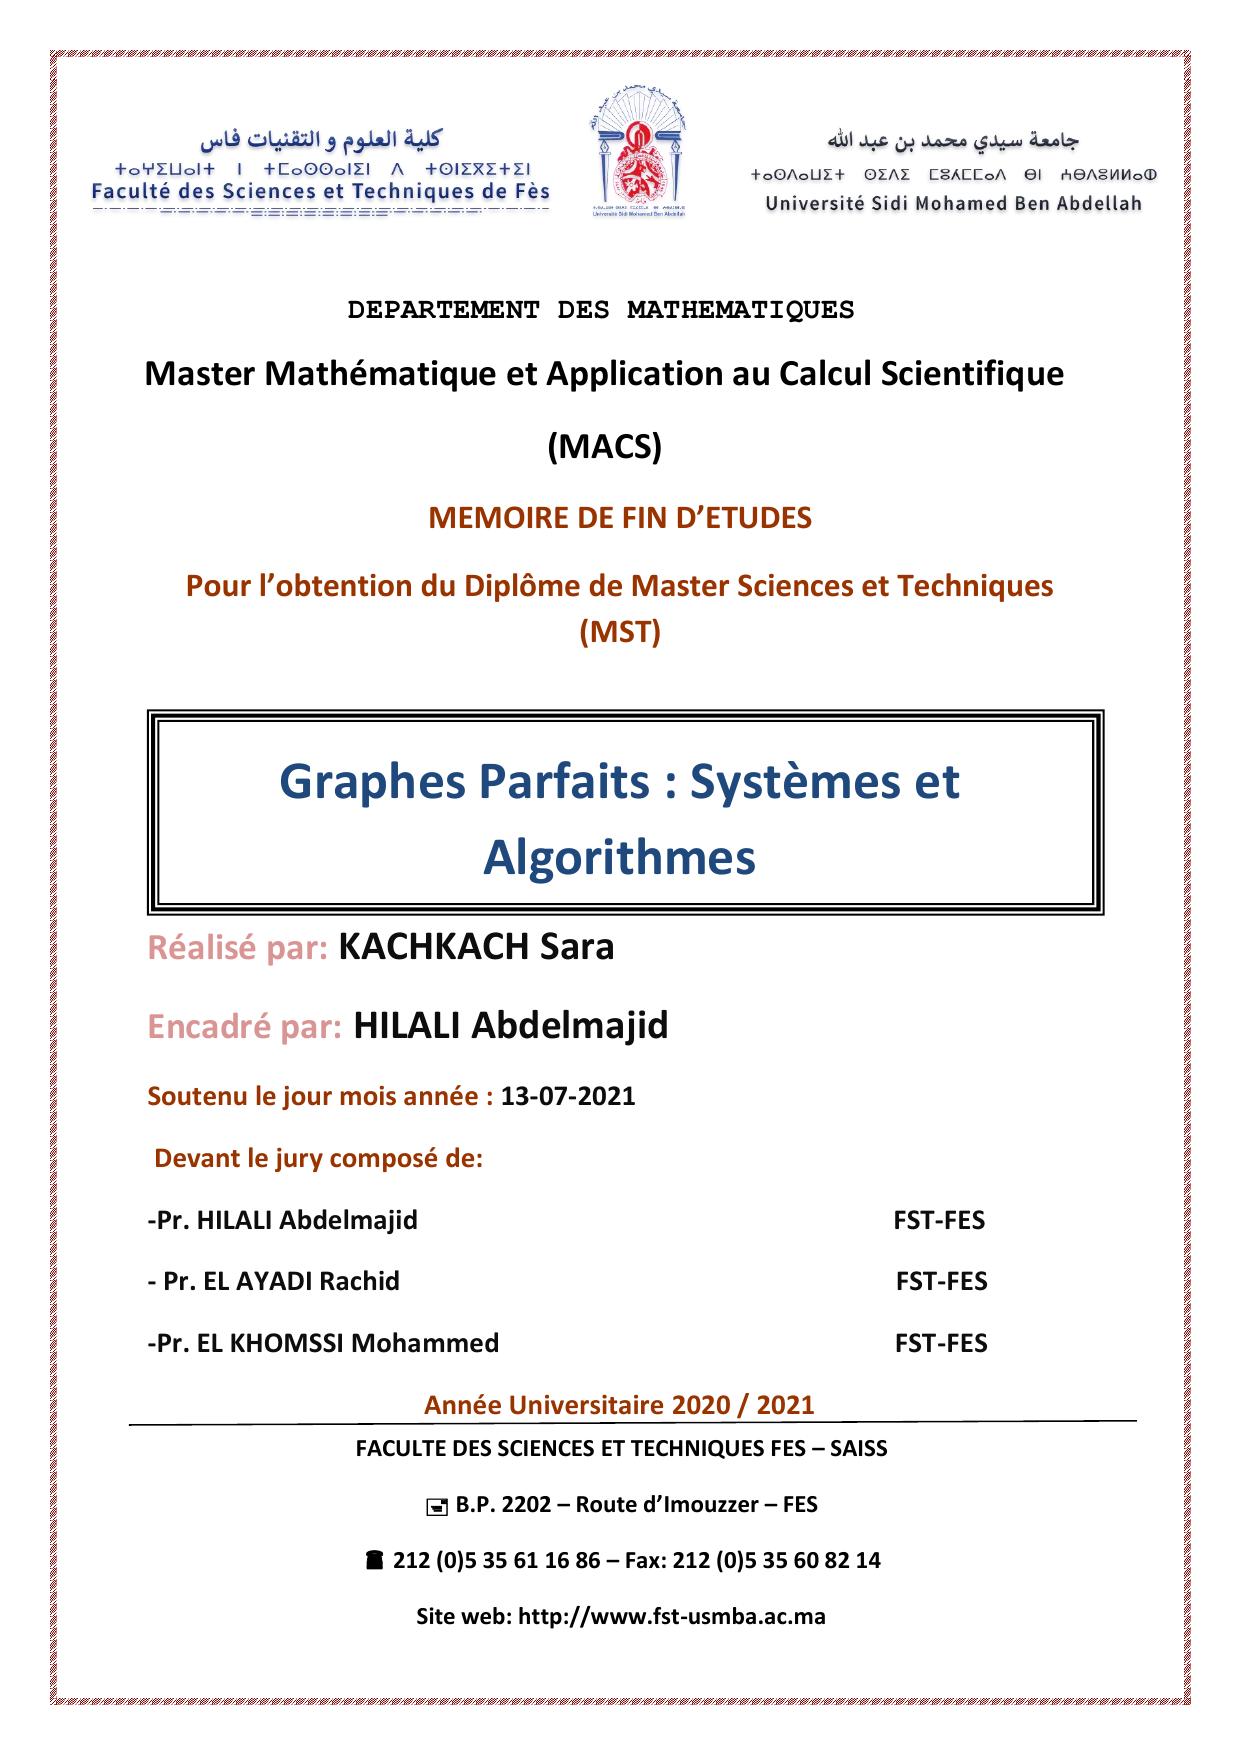 Graphes Parfaits : Systèmes et Algorithmes